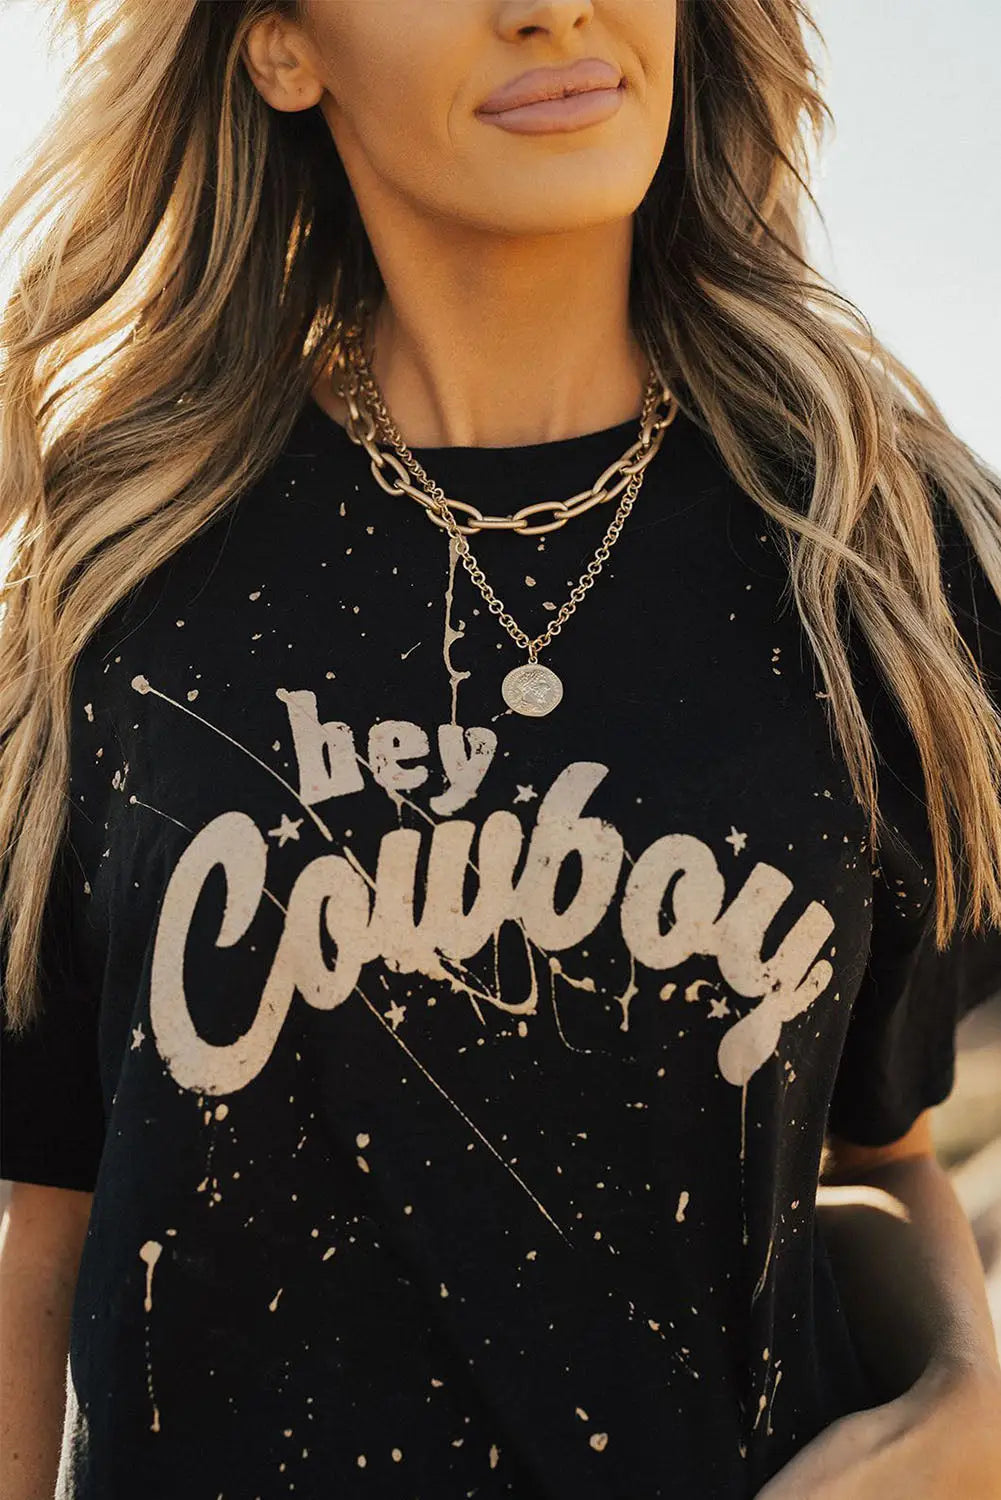 Black hey cowboy vintage splashed t shirt - tops